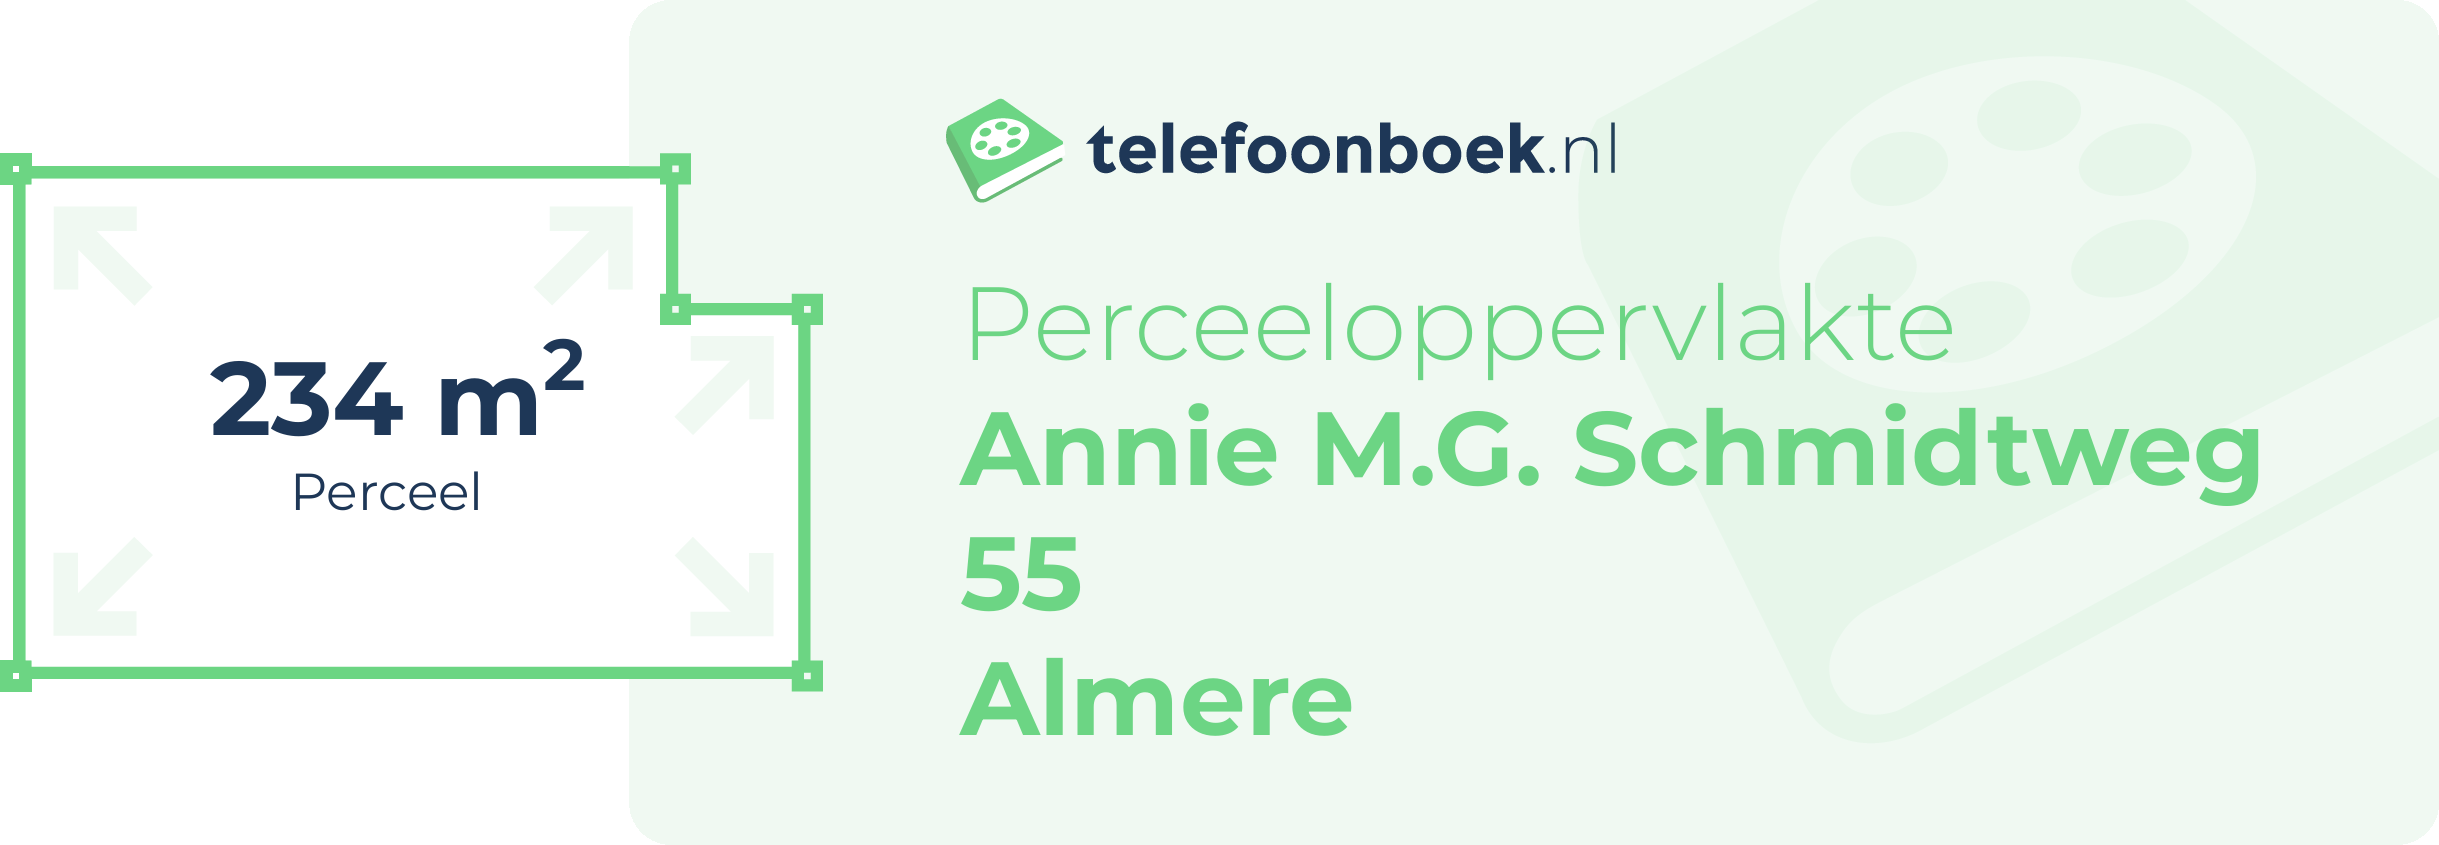 Perceeloppervlakte Annie M.G. Schmidtweg 55 Almere